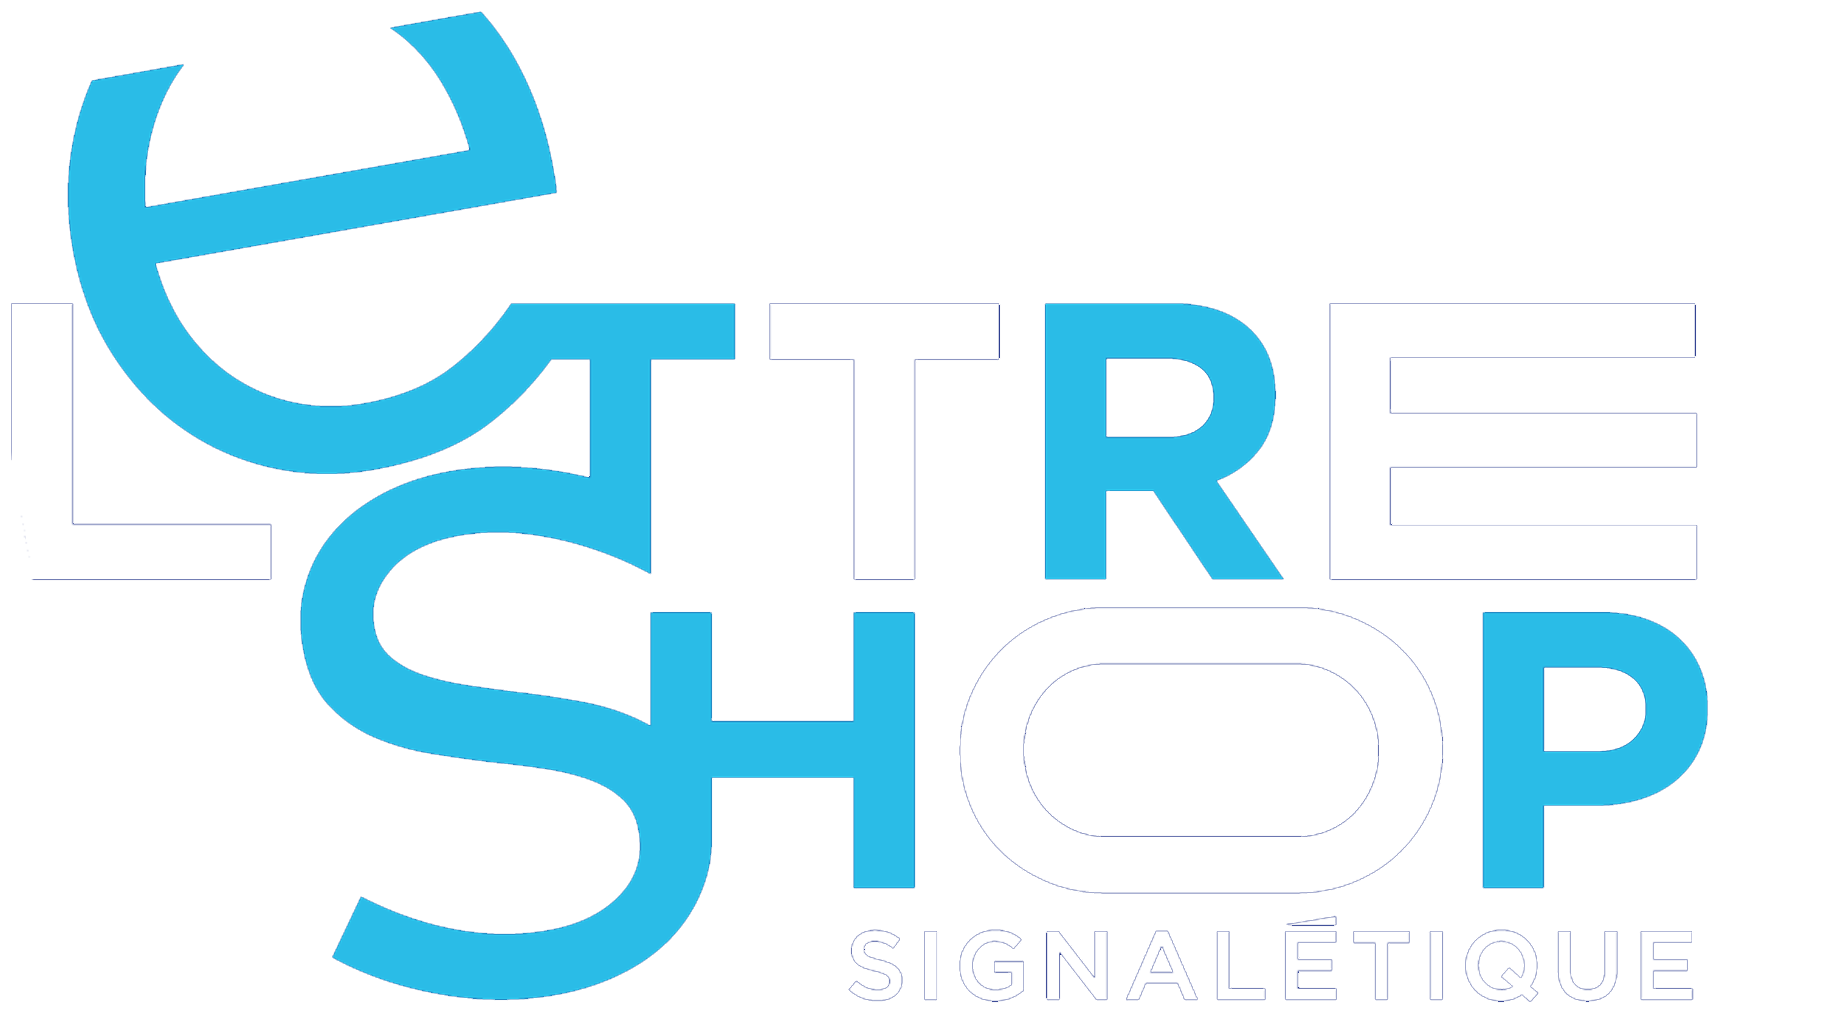 Lettreshop Signalétique logo